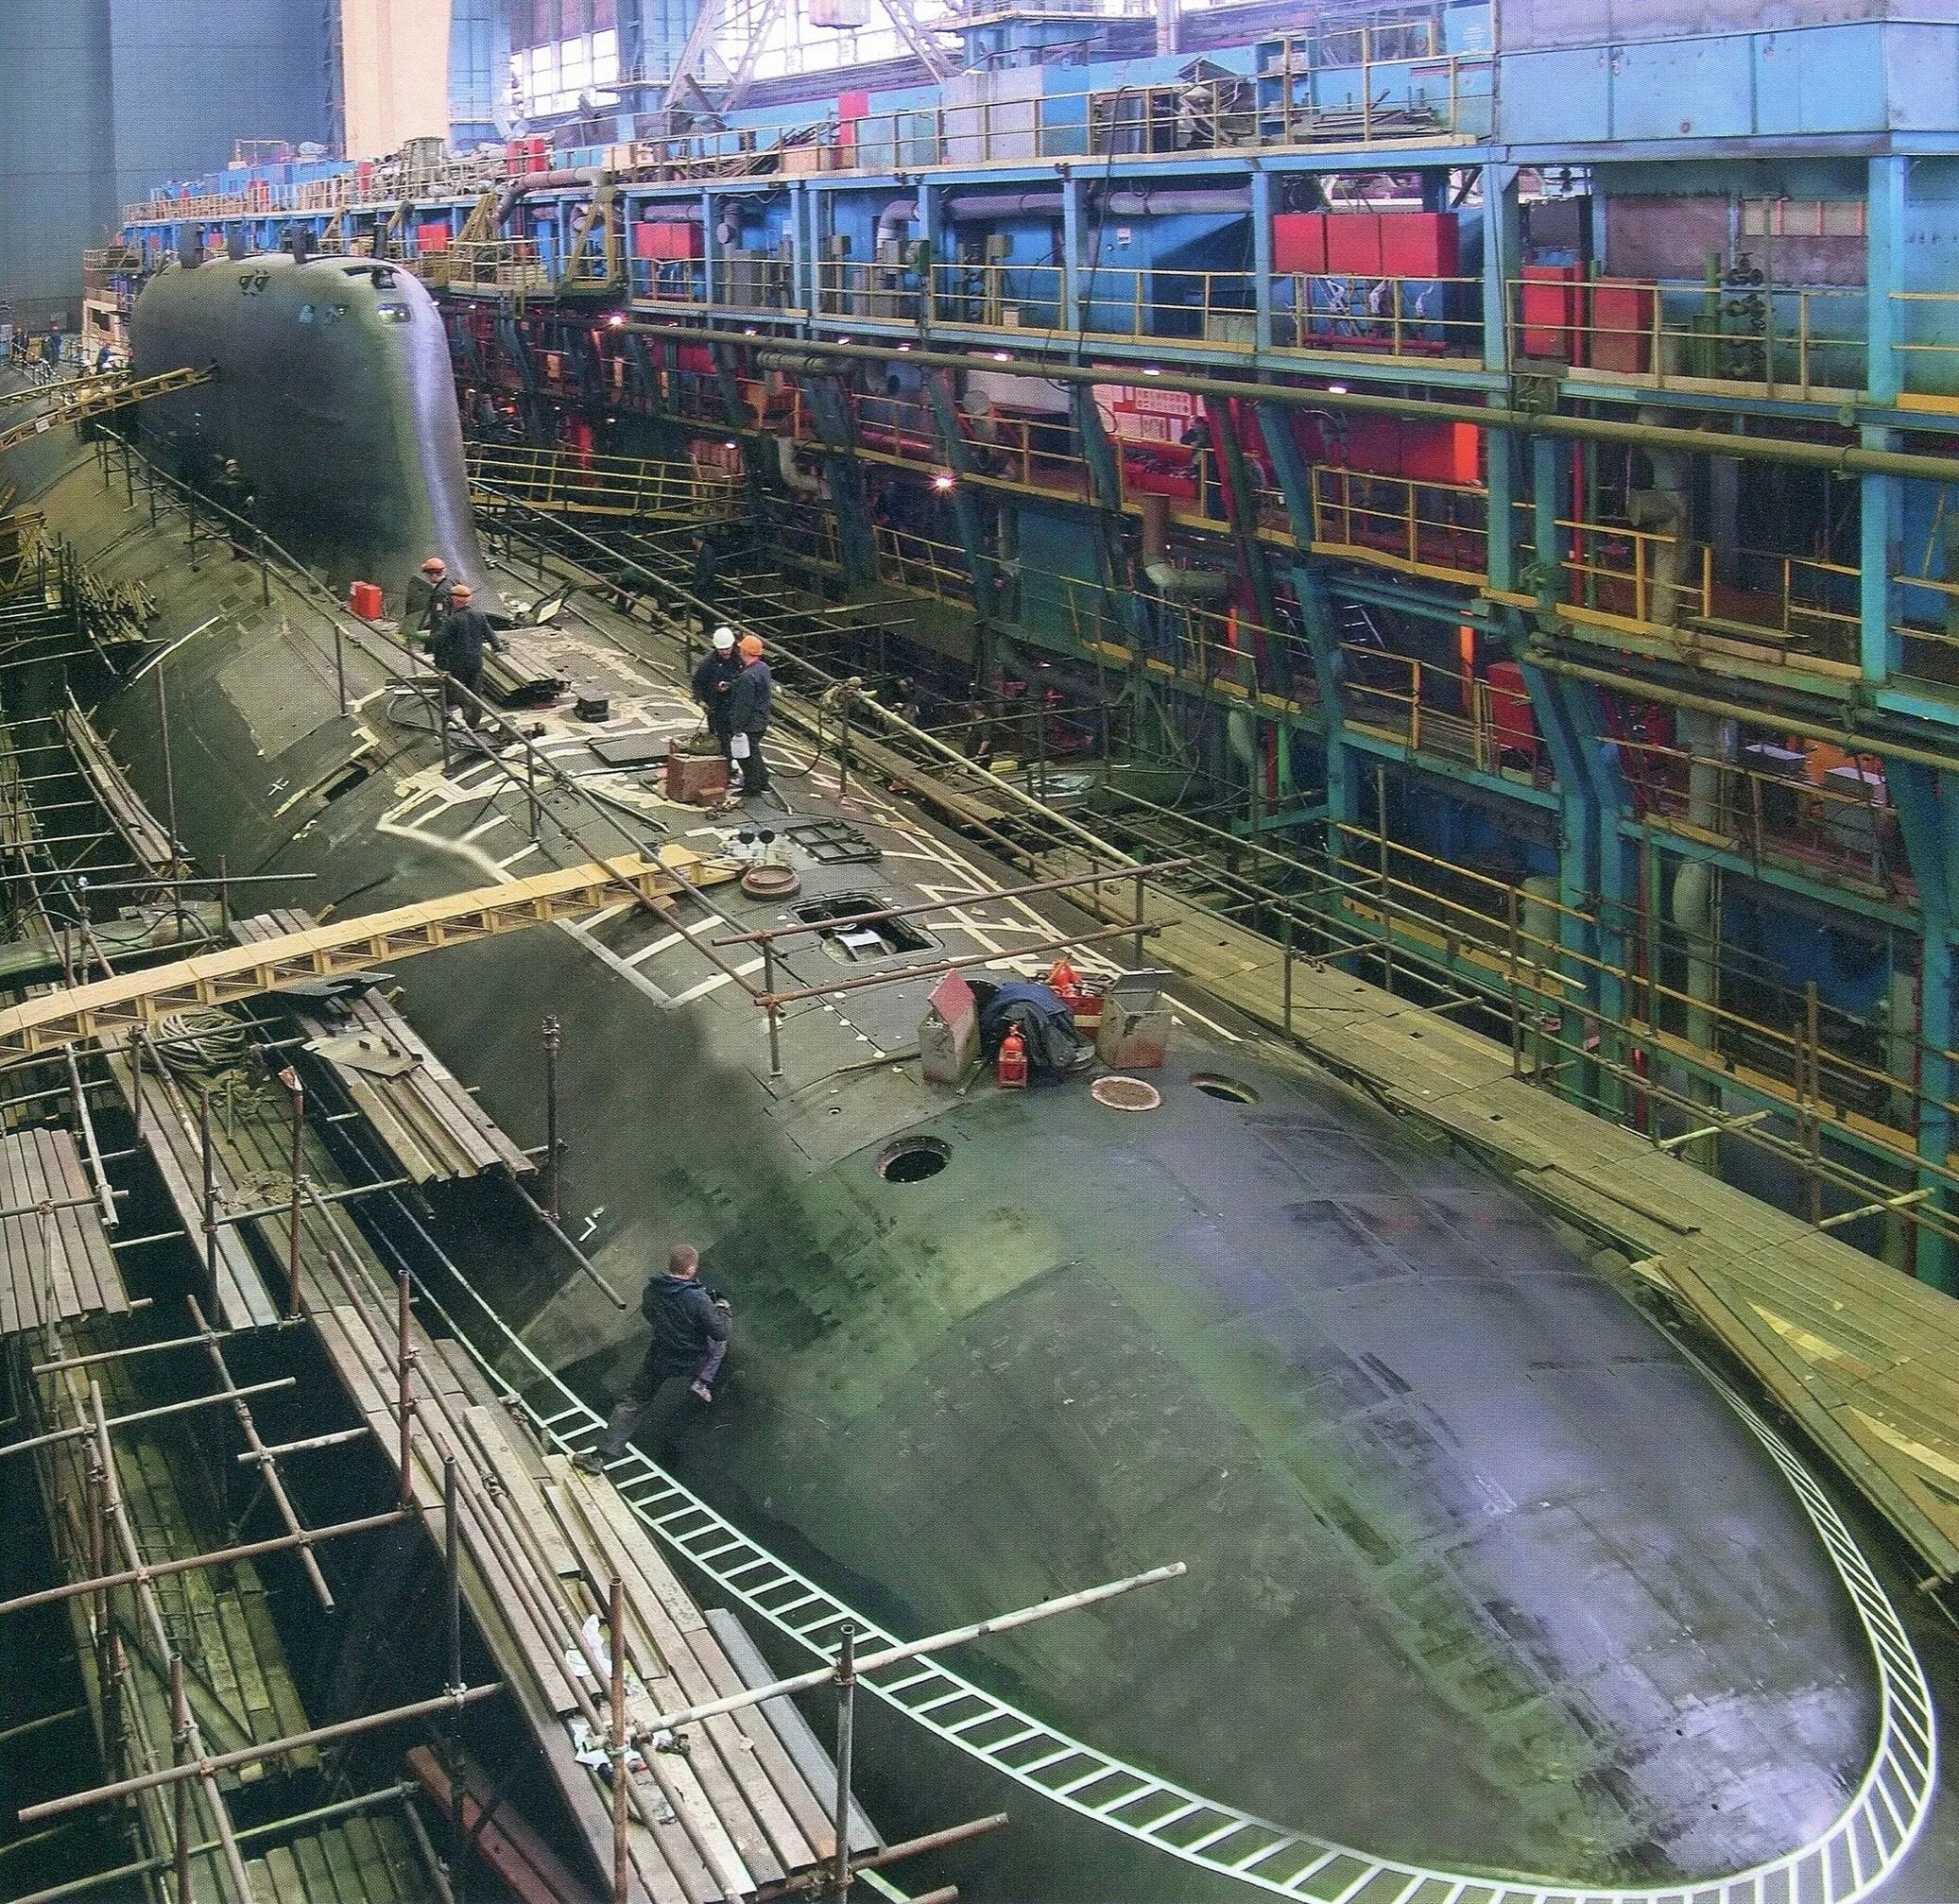 Г севмаш. Северодвинск завод подводных лодок Севмаш. Севмаш Северодвинск 55 цех. Севмаш Северодвинск подводная лодка. Завод атомных подводных лодок Северодвинск.